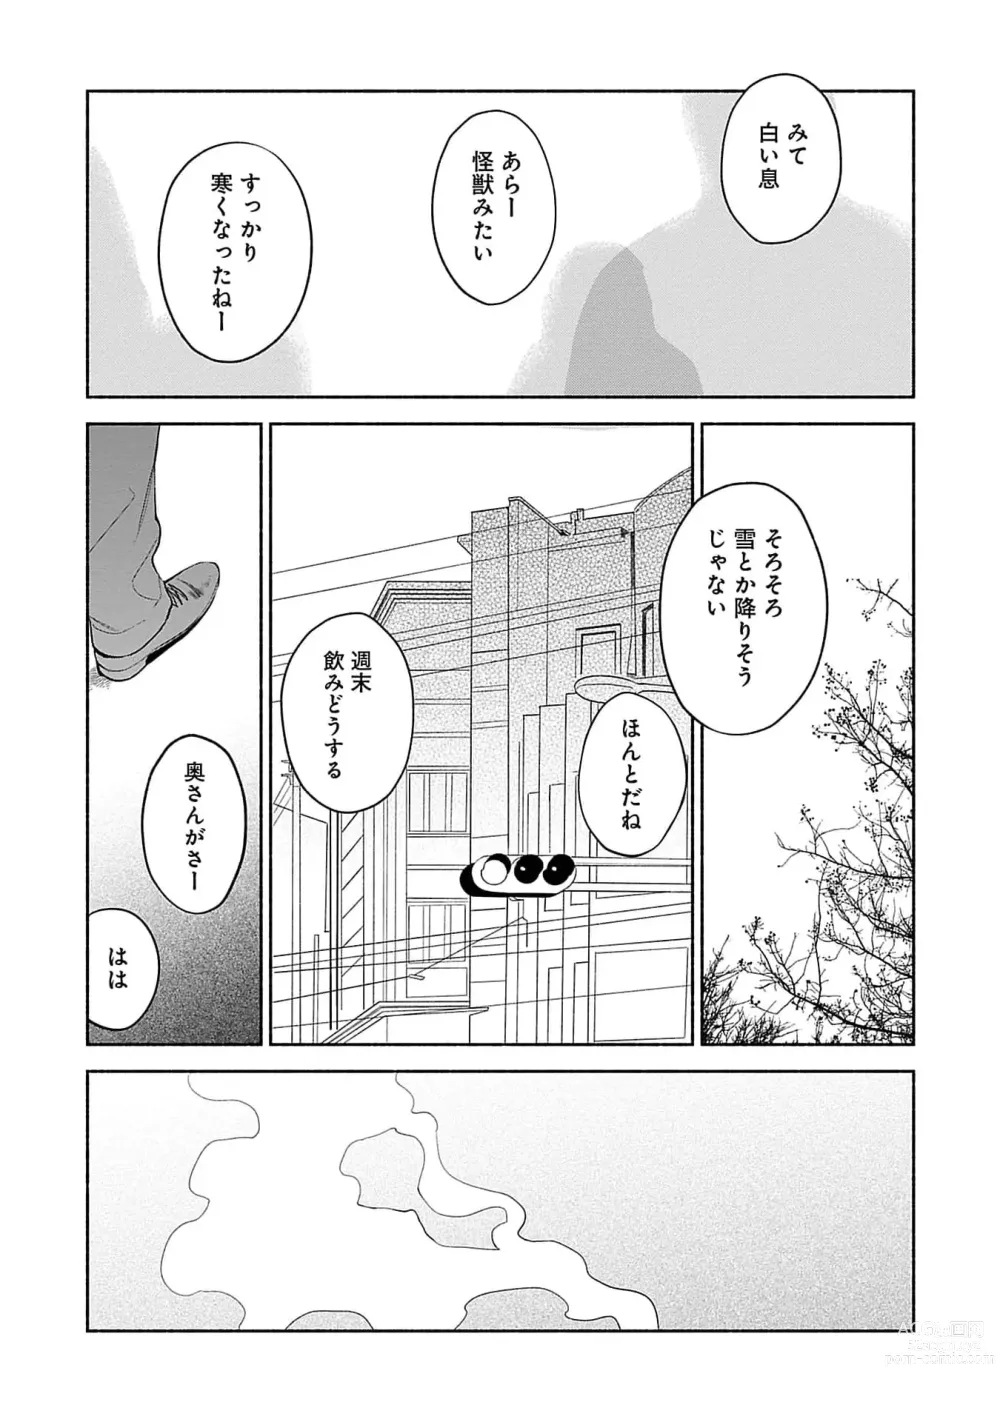 Page 163 of manga Yoru no Kyoudai